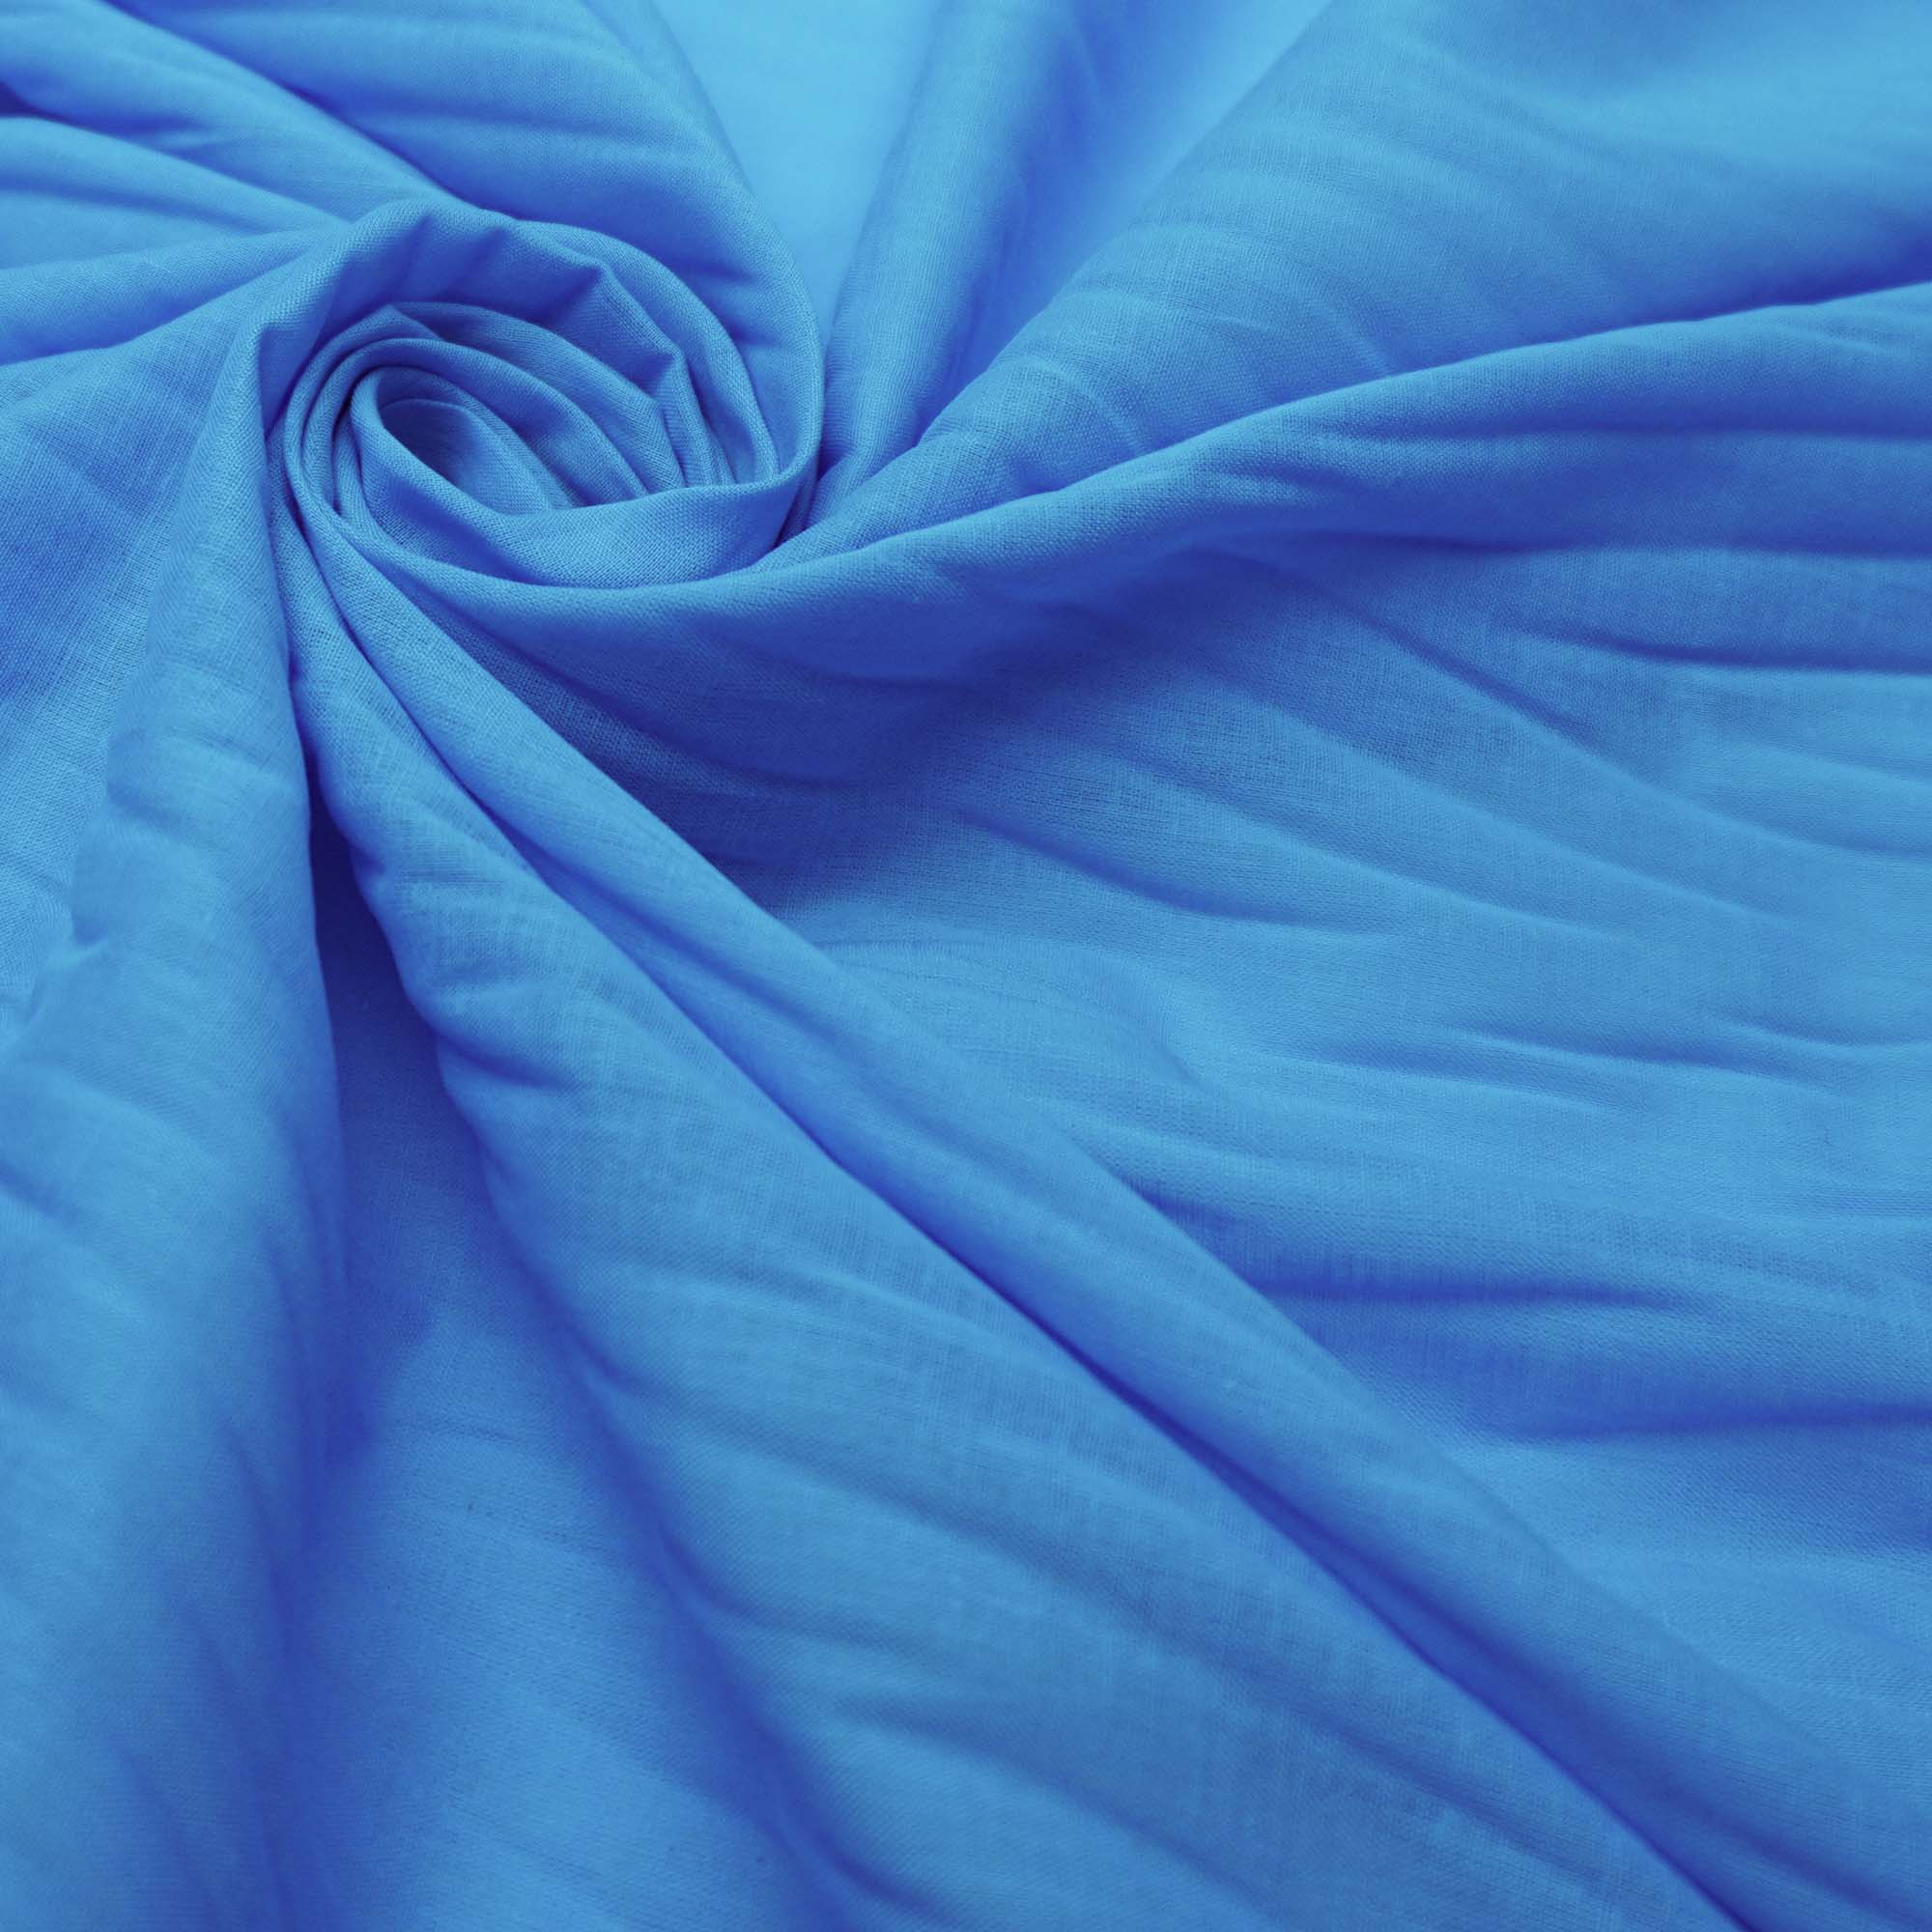 Tecido cambraia de algodão azul celeste